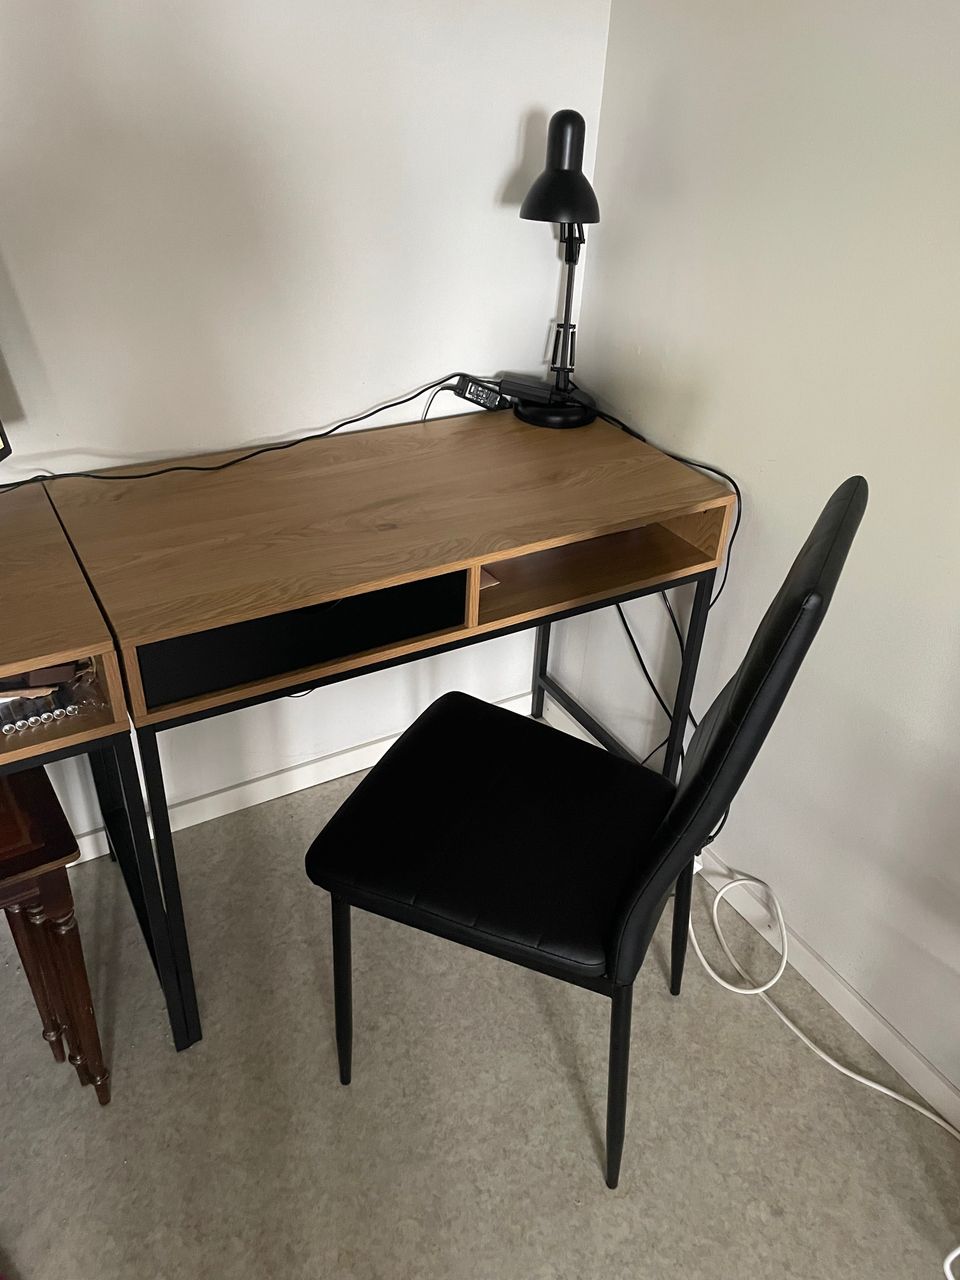 Työpöytä- ja tuoli